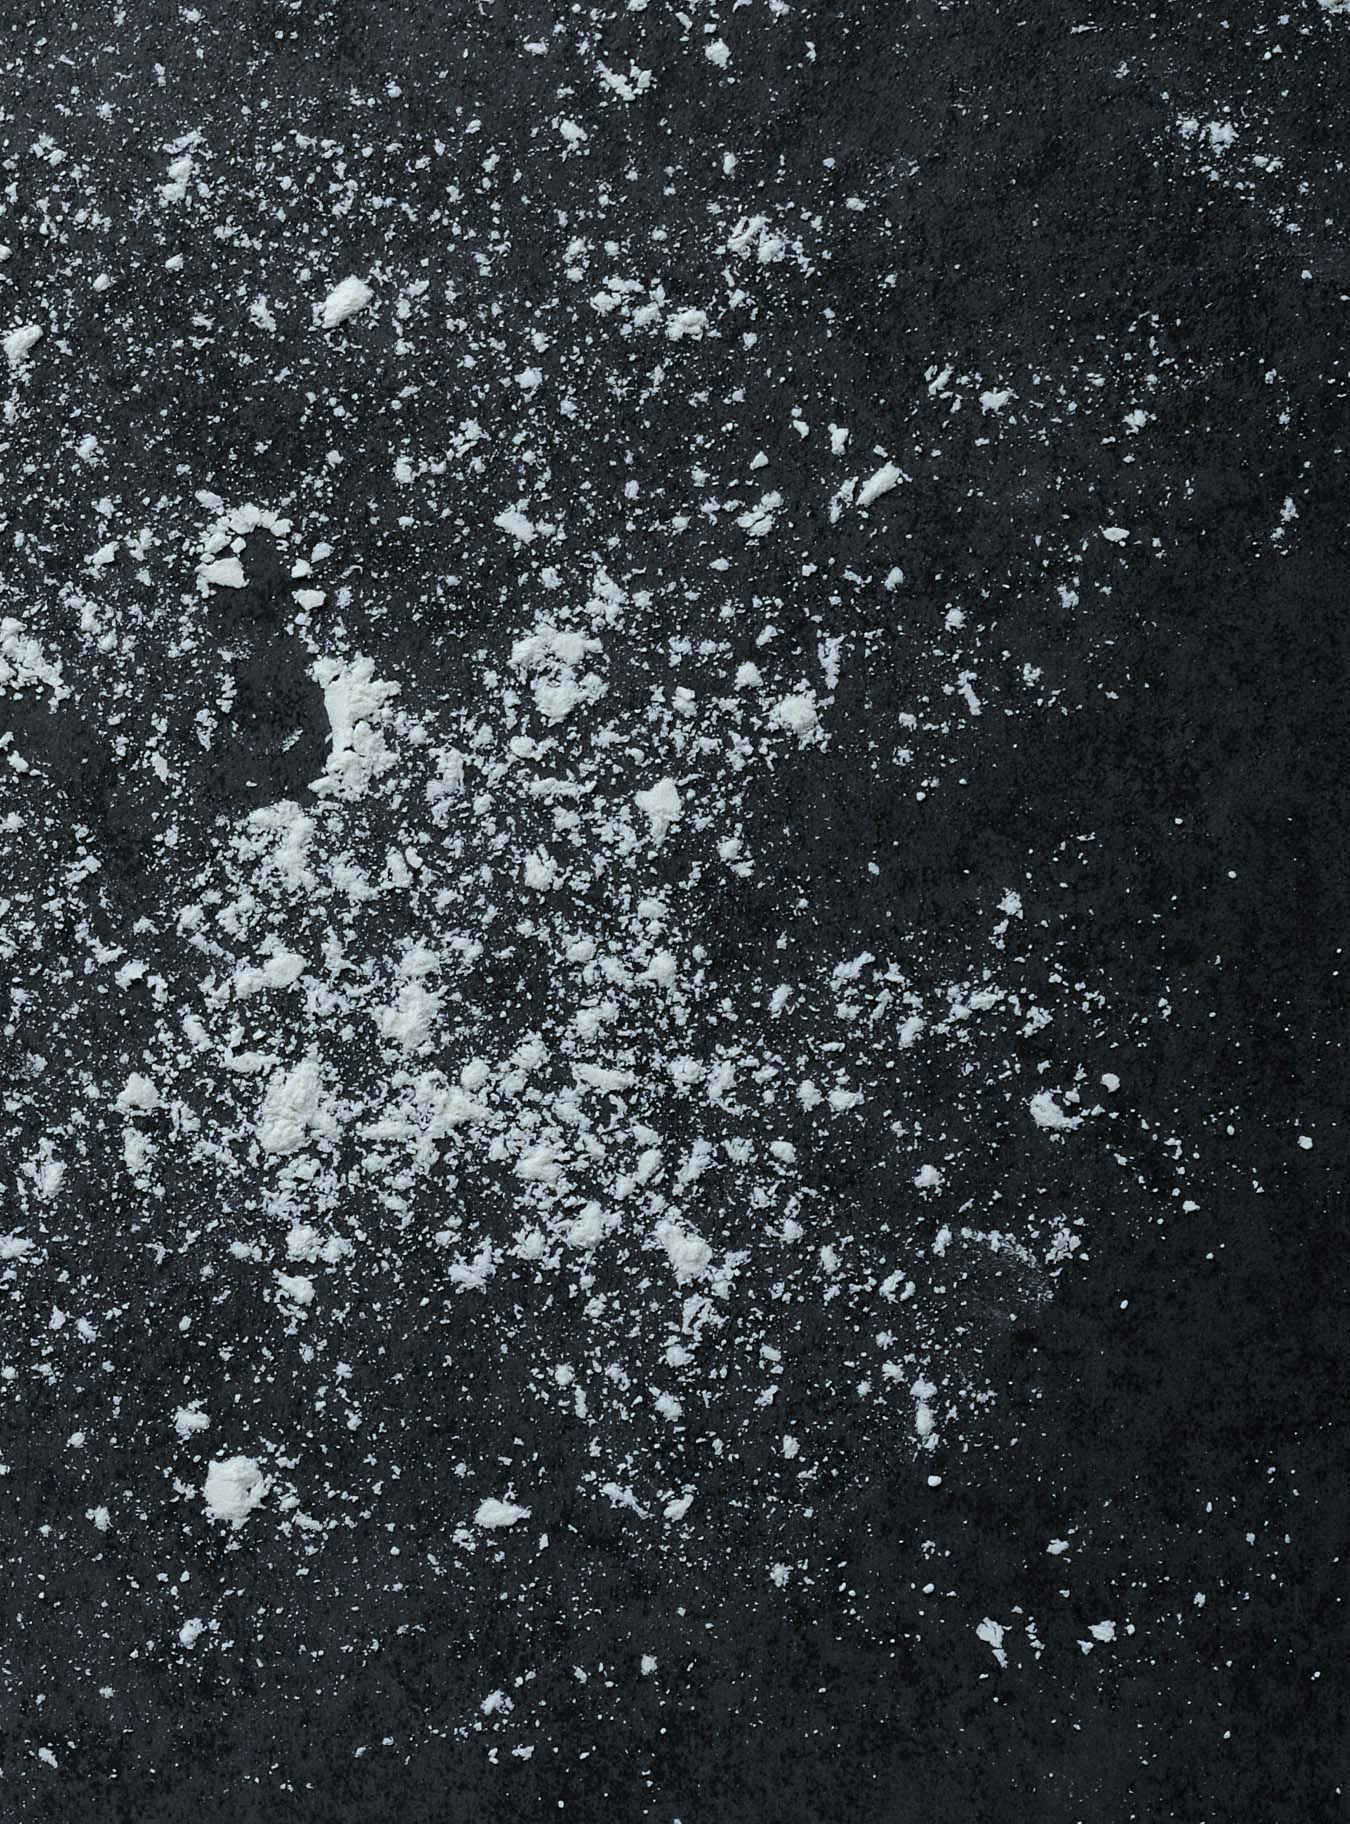 white flour scattered over dark plate